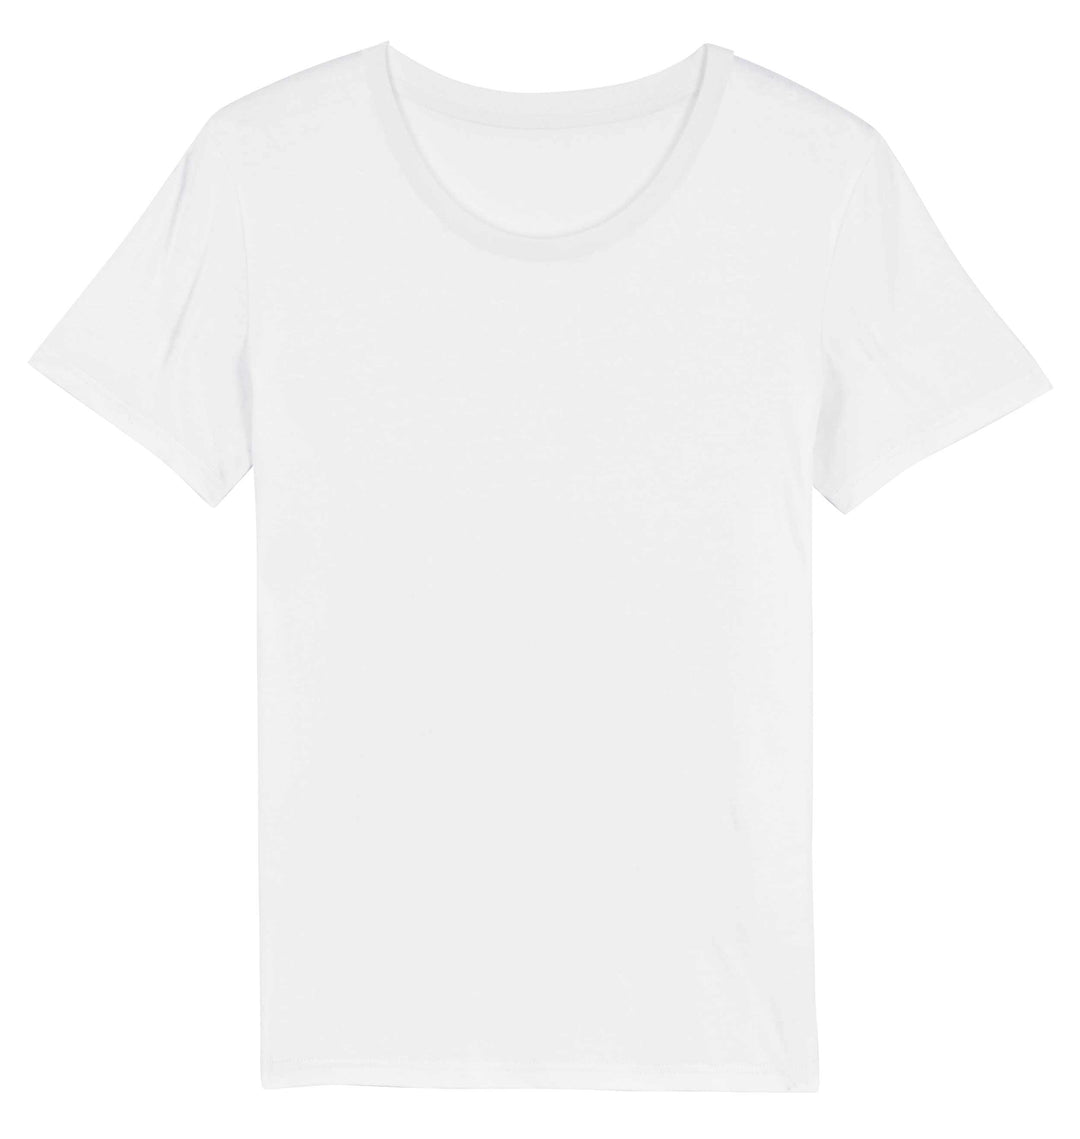 Massgeschneidertes T-Shirt UNISEX Rundhals